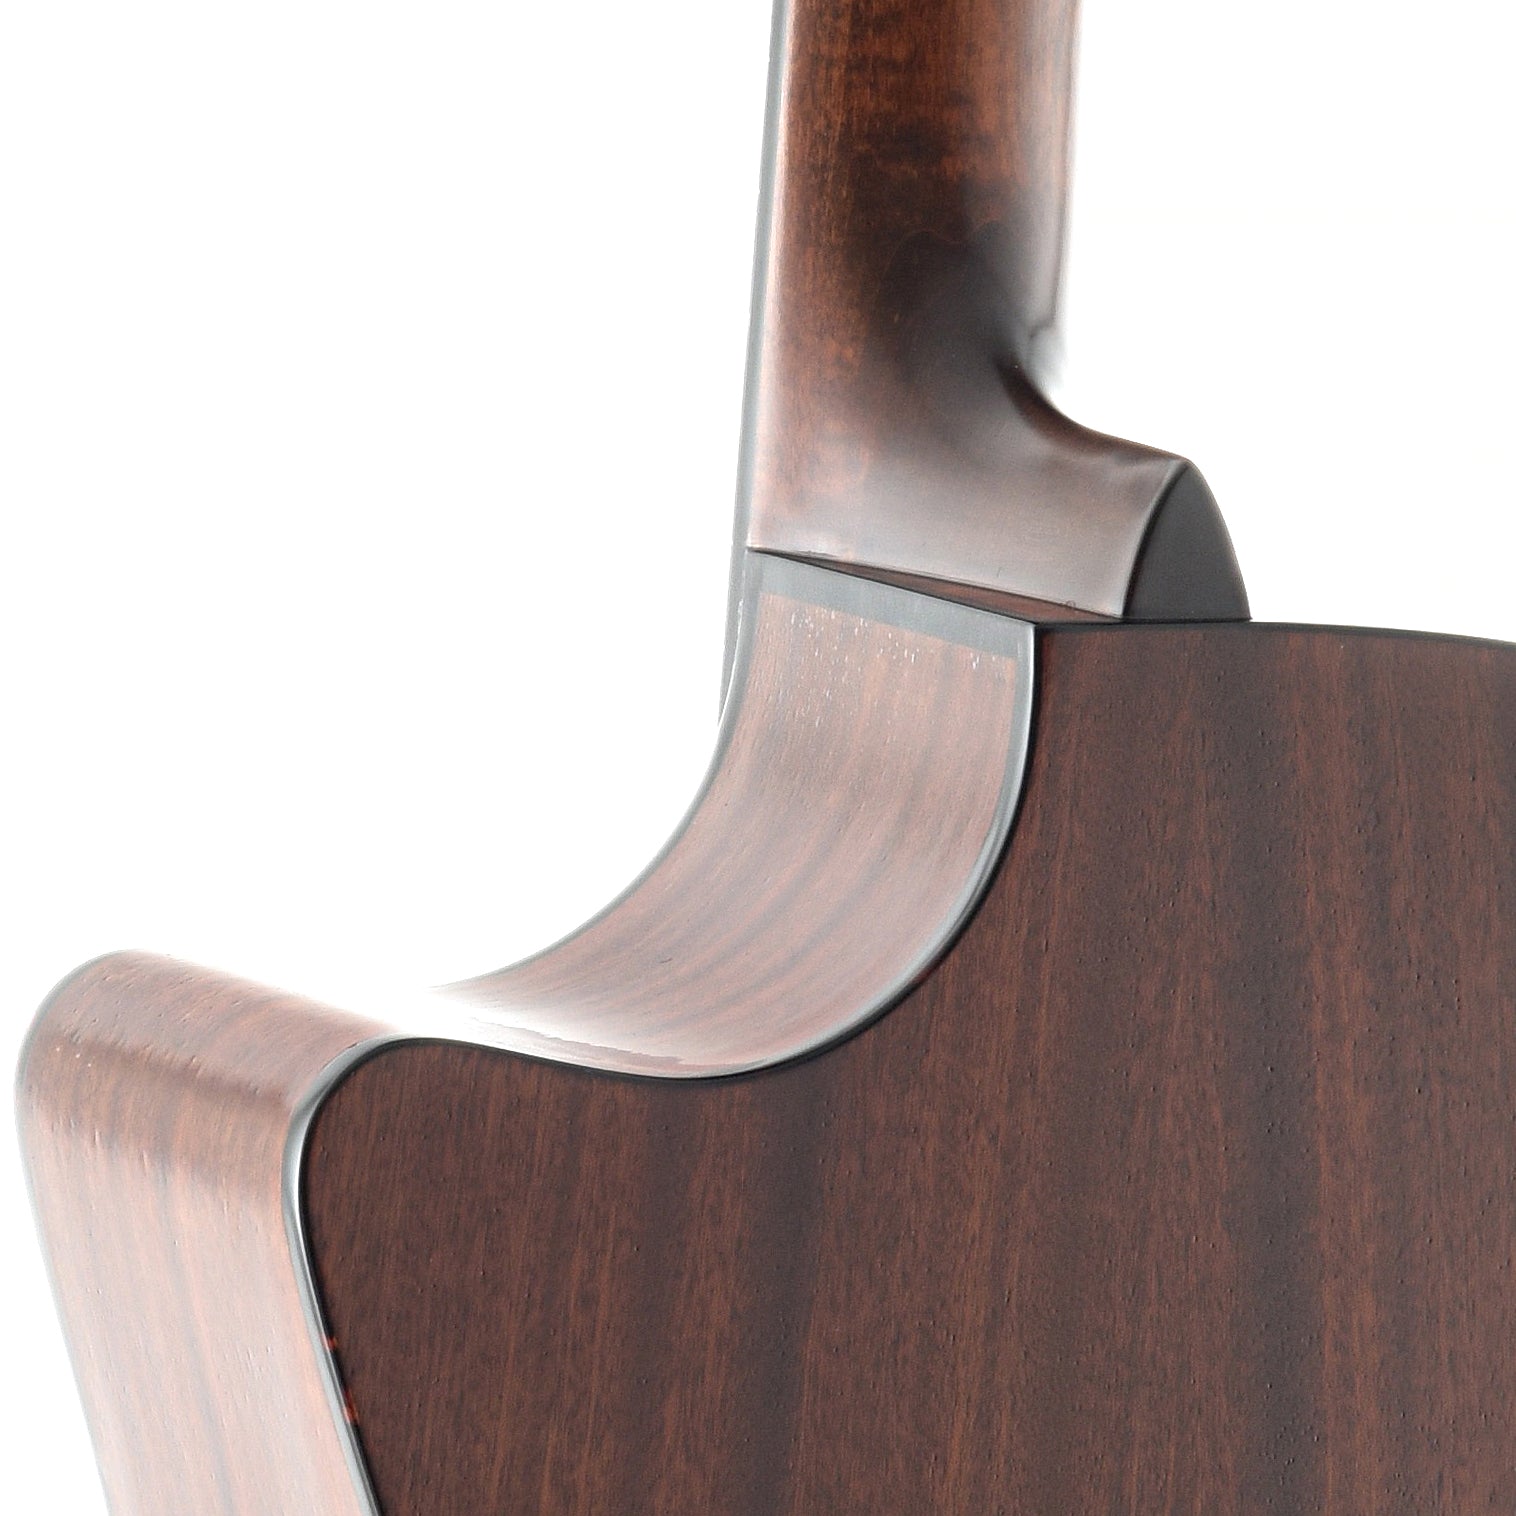 heel of Eastman AC122-2CE Acoustic 